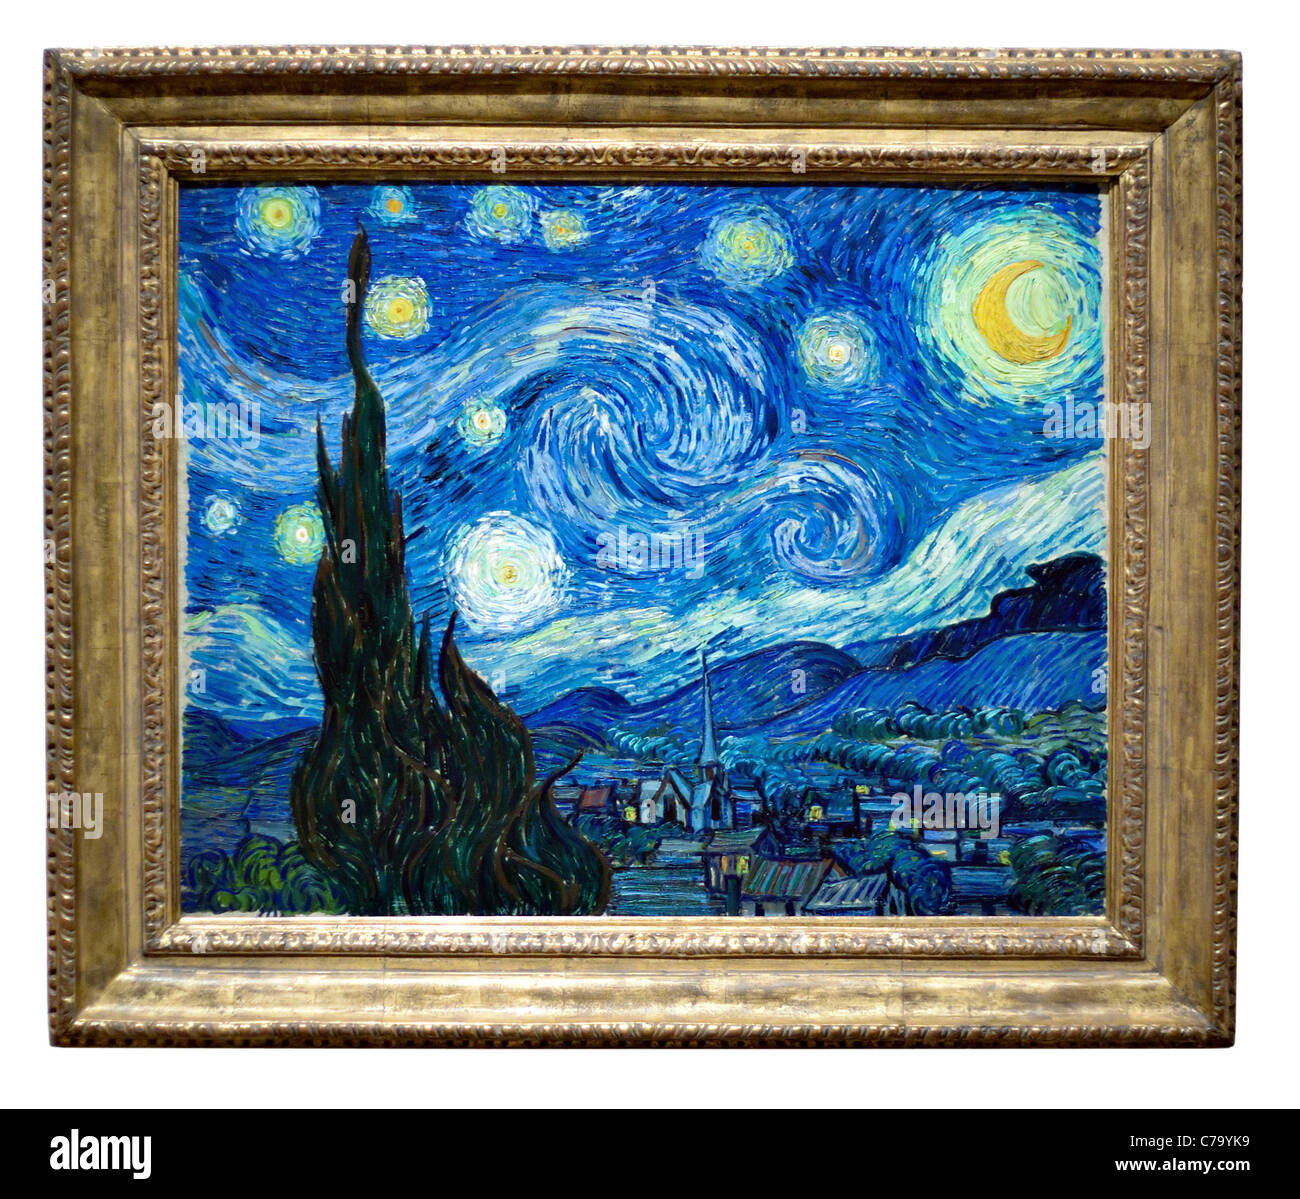 Photo de la fameuse Nuit étoilée original toile de l'artiste Vincent Van Gogh. Huile sur toile. Banque D'Images